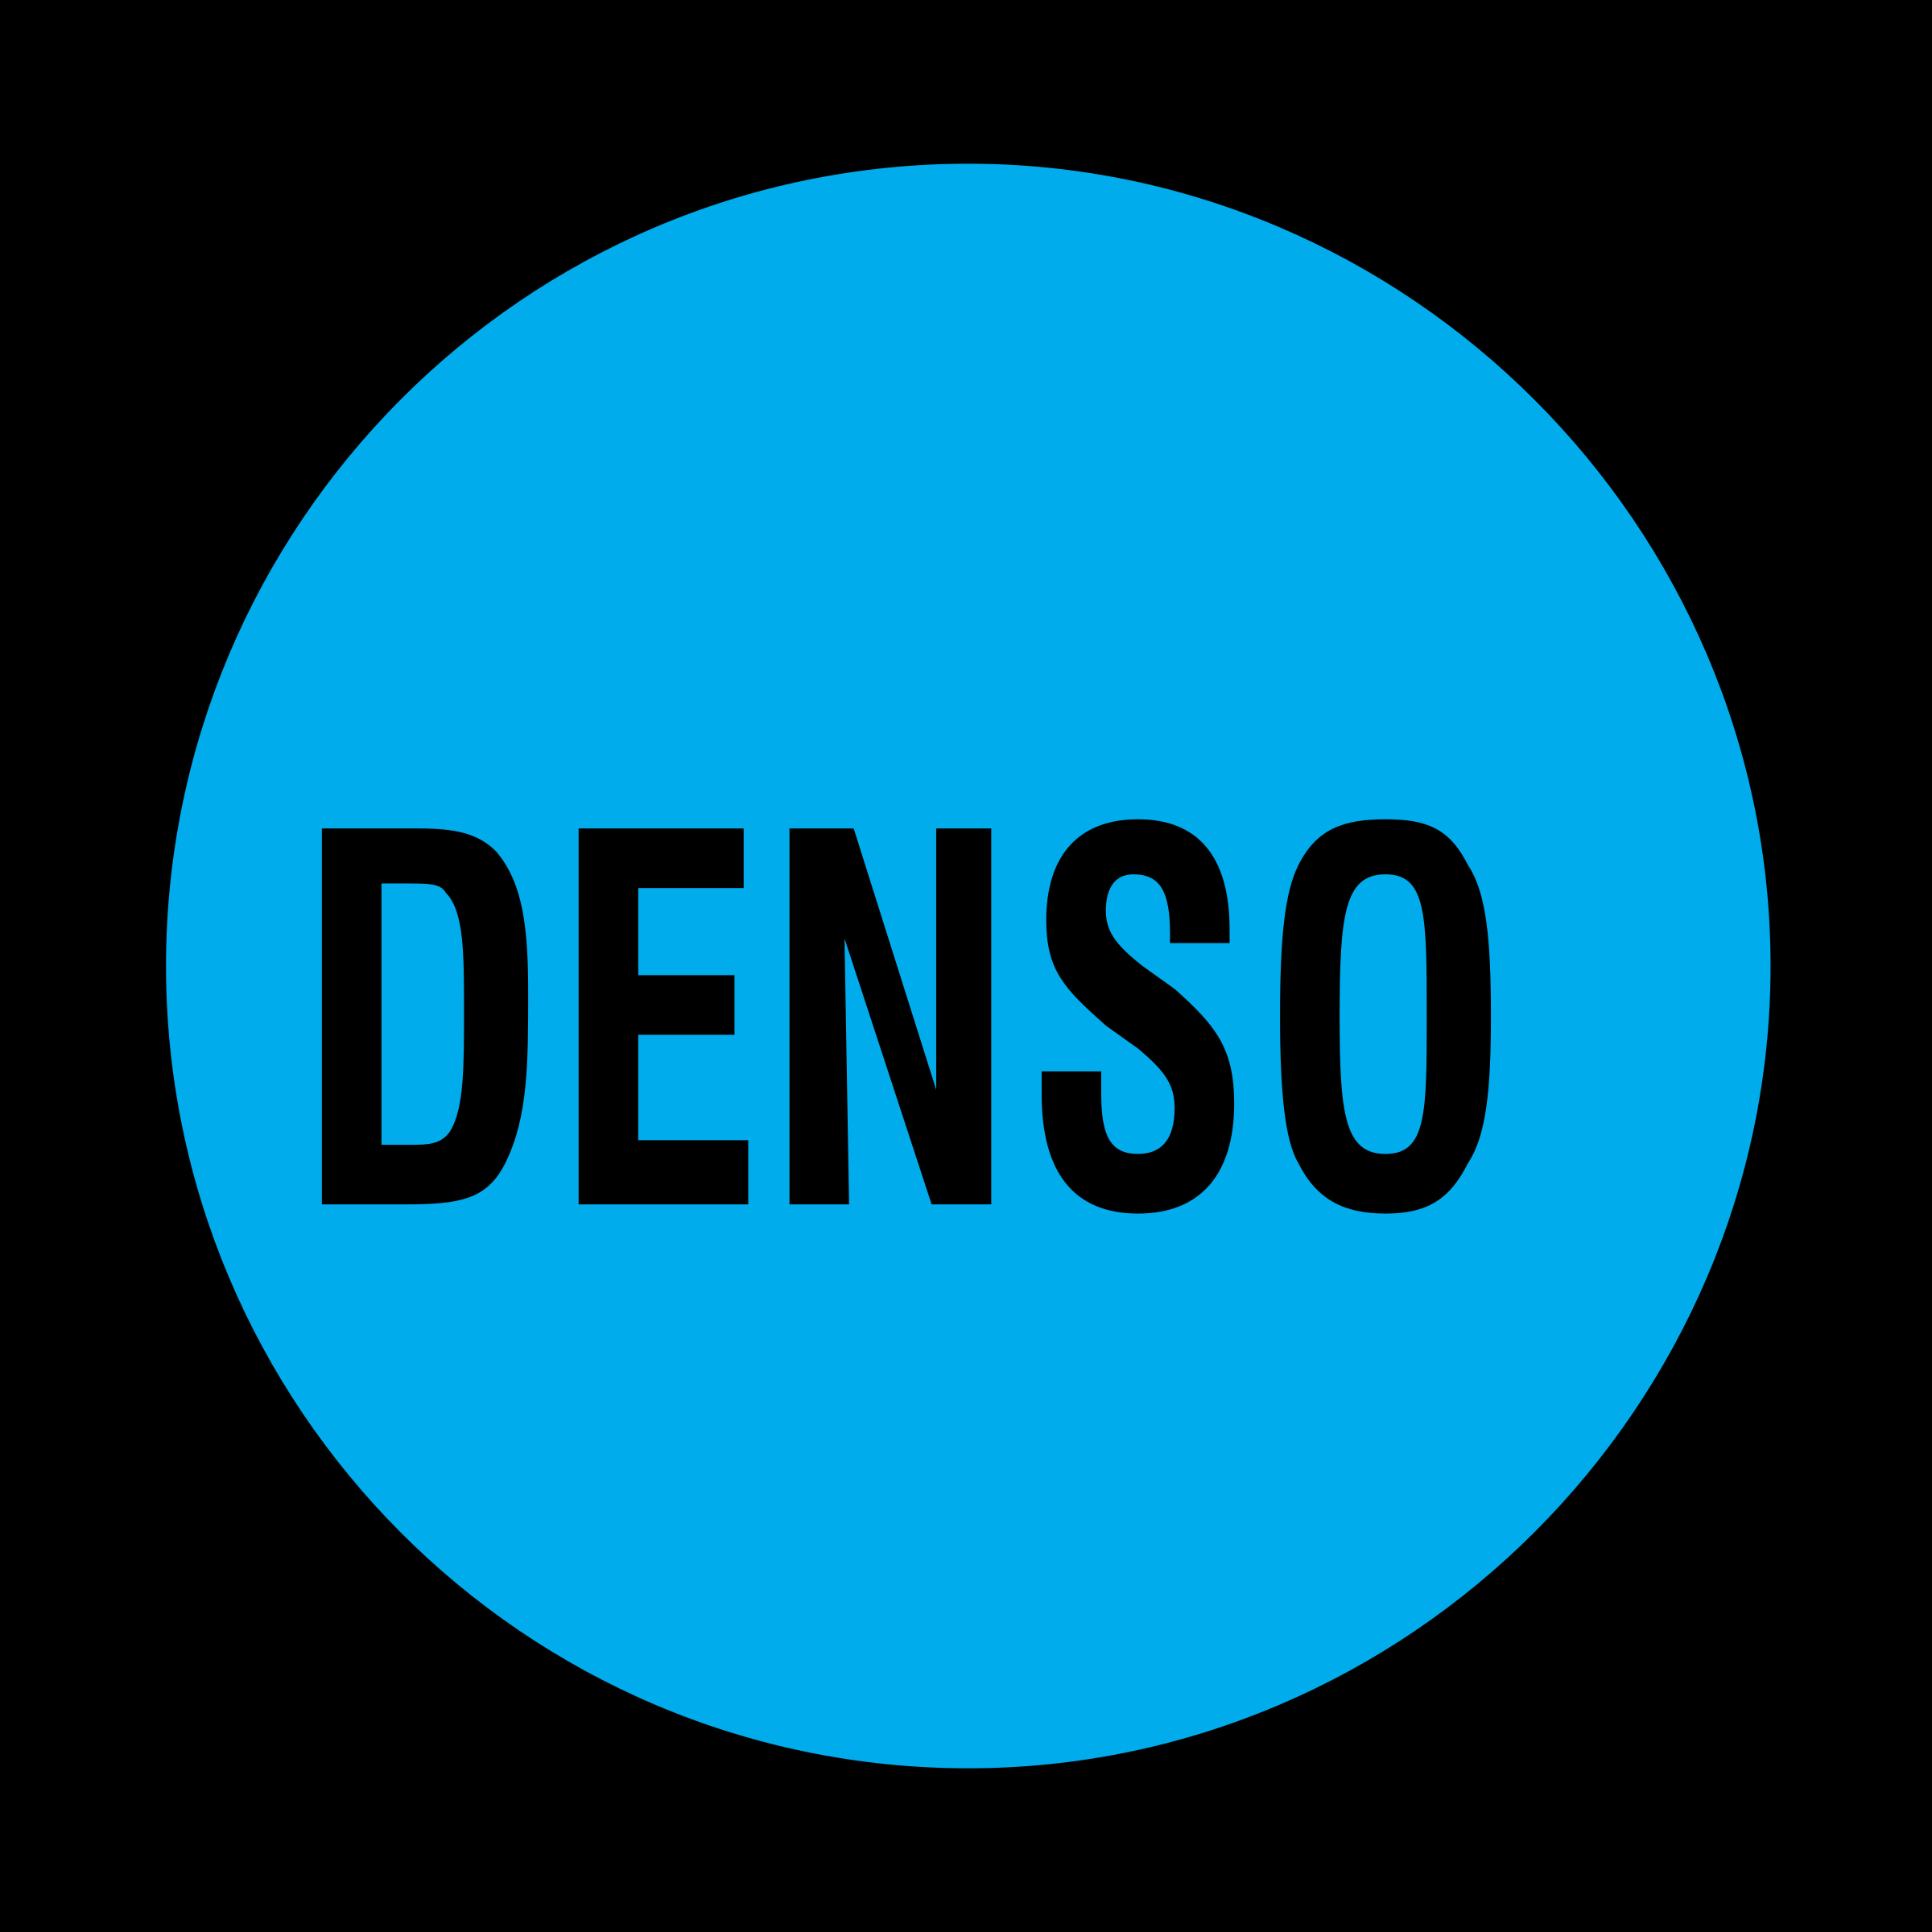 Denso Logo Vector Free Downlo